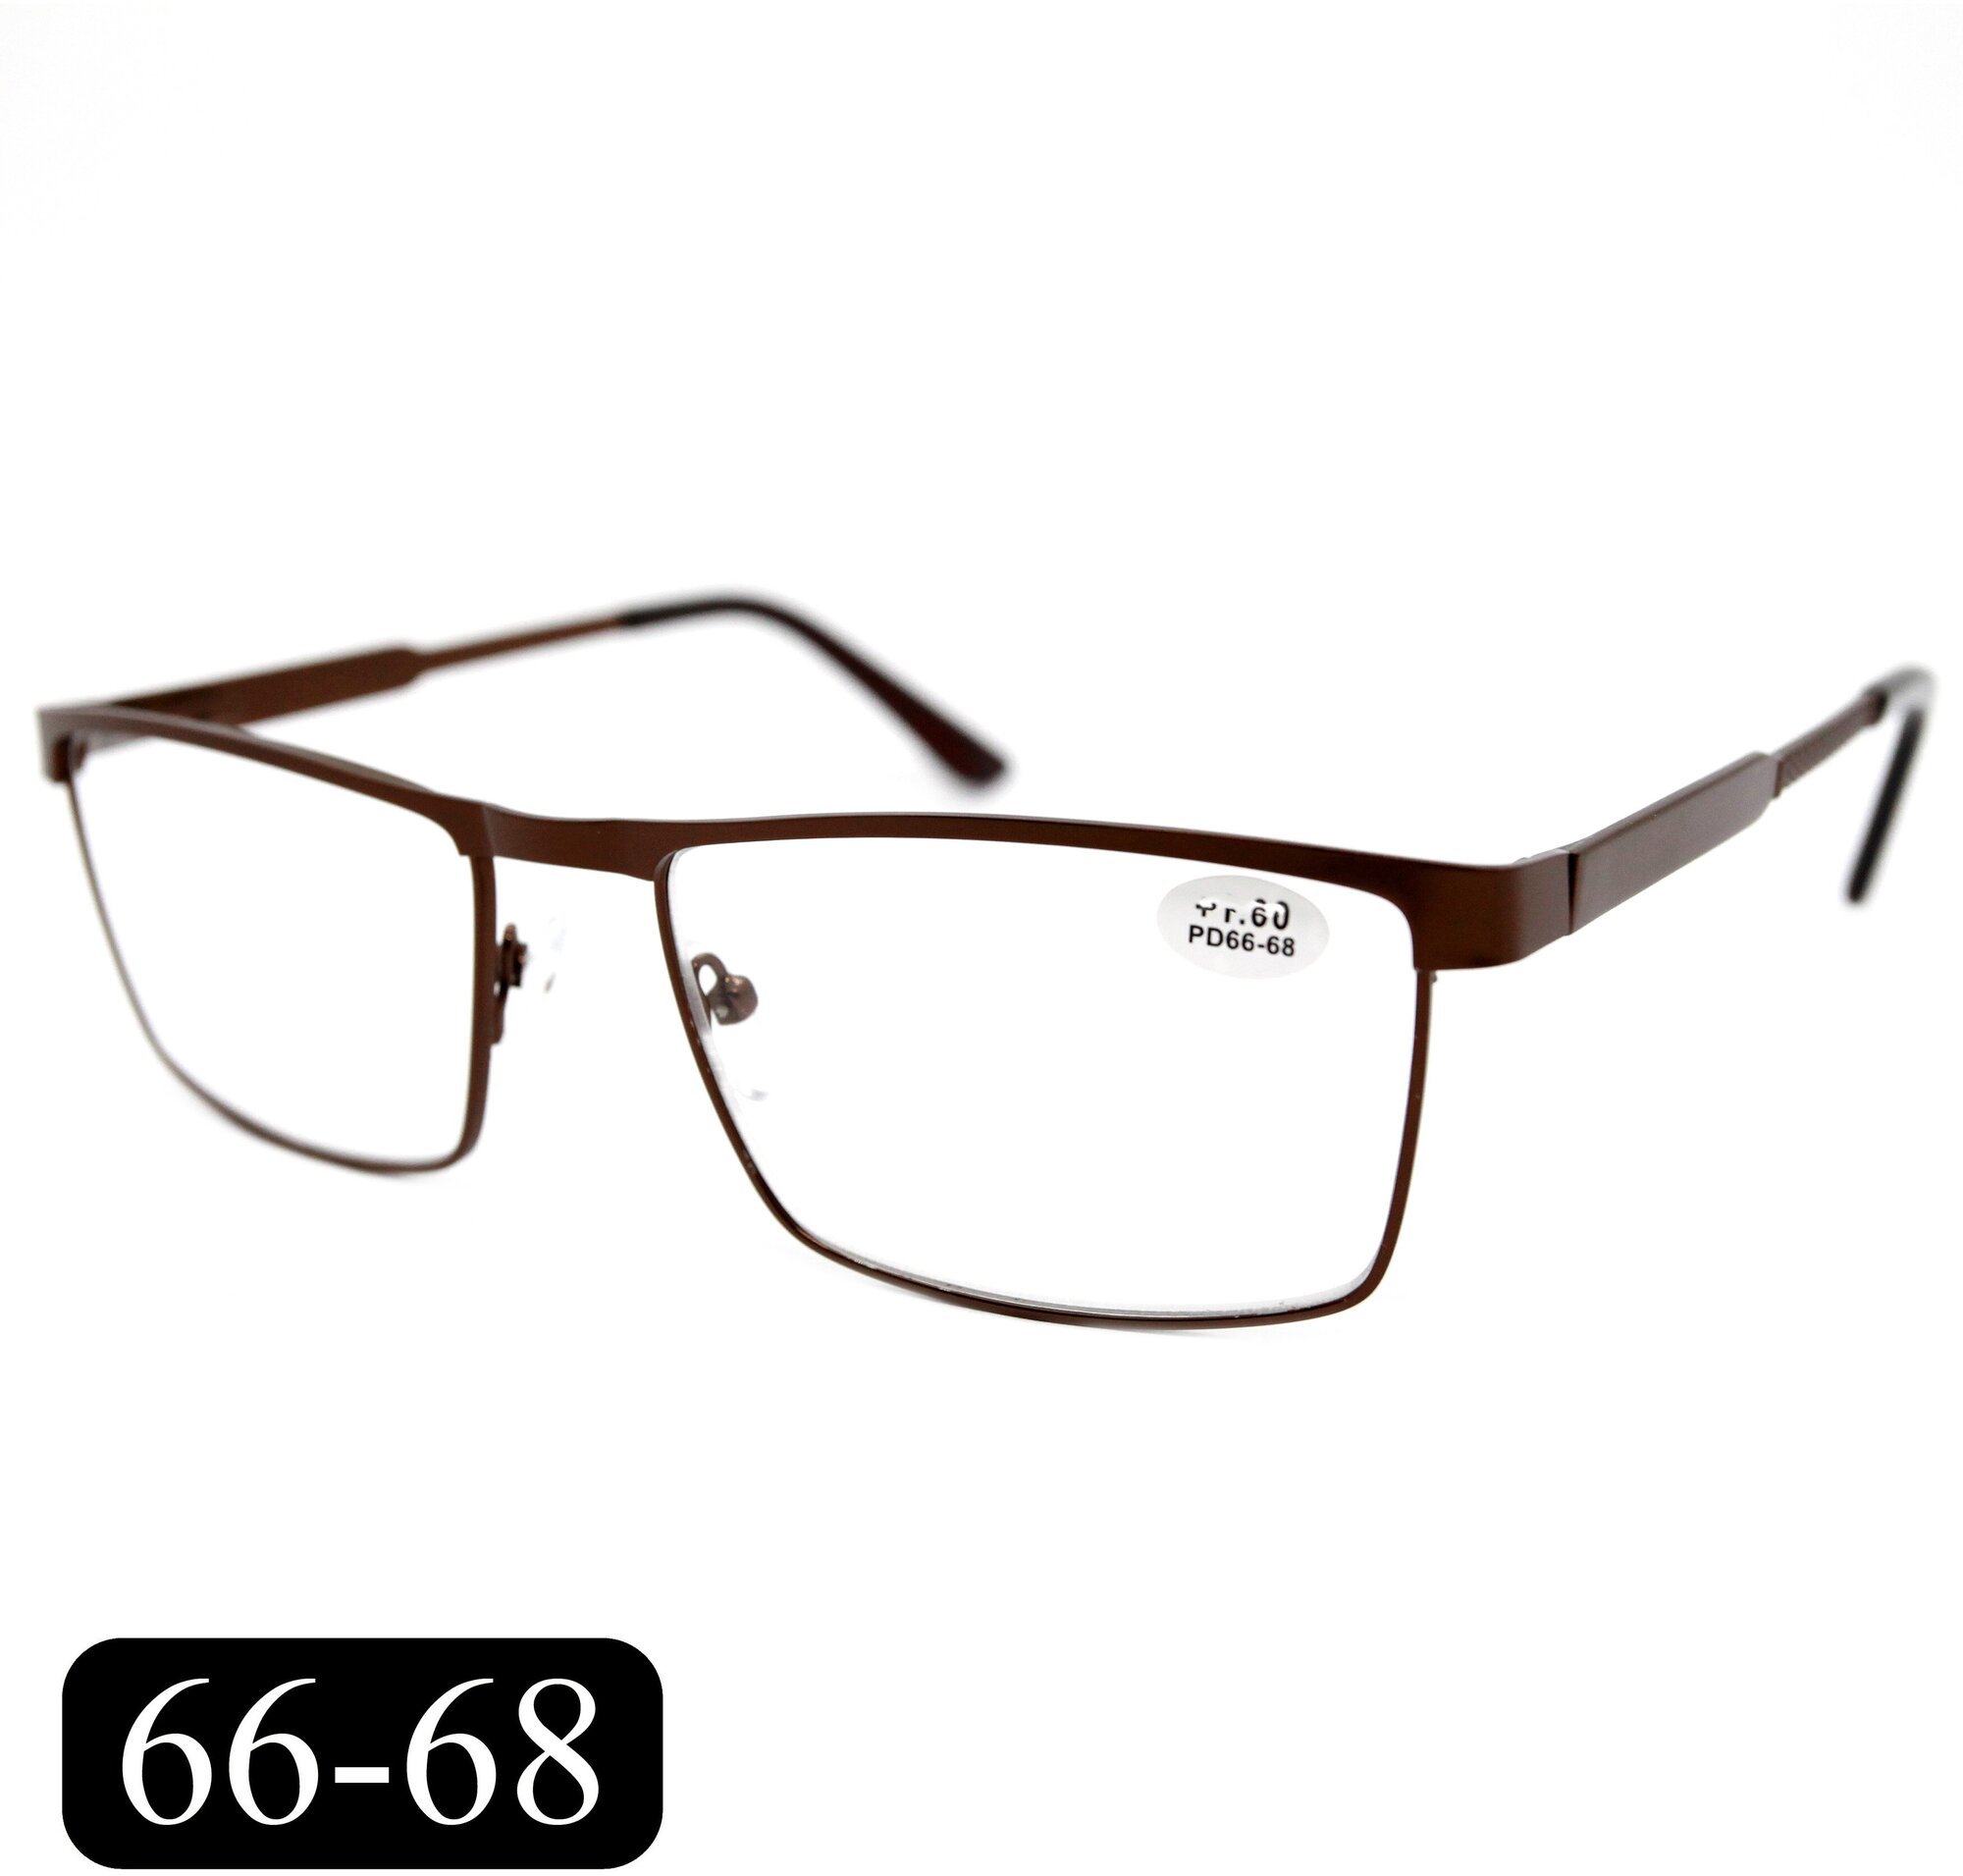 Готовые очки РЦ 66-68 для зрения-чтения (+2.50) мост 342 M1 без футляра цвет коричневый линзы пластик РЦ 66-68